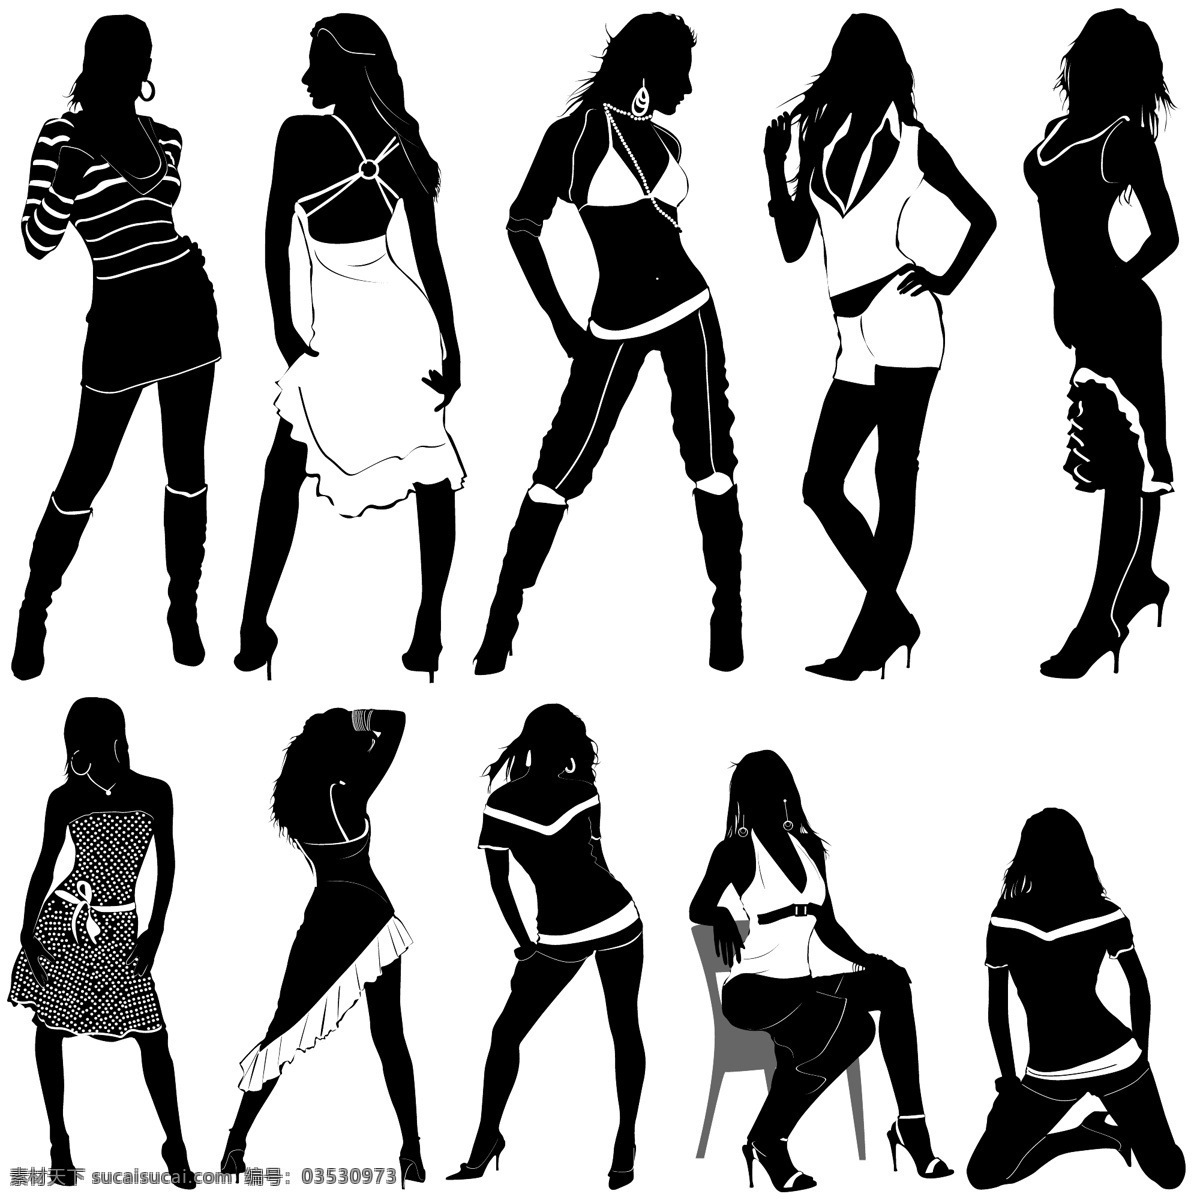 女孩 人物 剪影 人物矢量 设计素材 矢量设计素材 舞蹈 运动 黑白 矢量 女性人物矢量 裙子美眉 矢量图